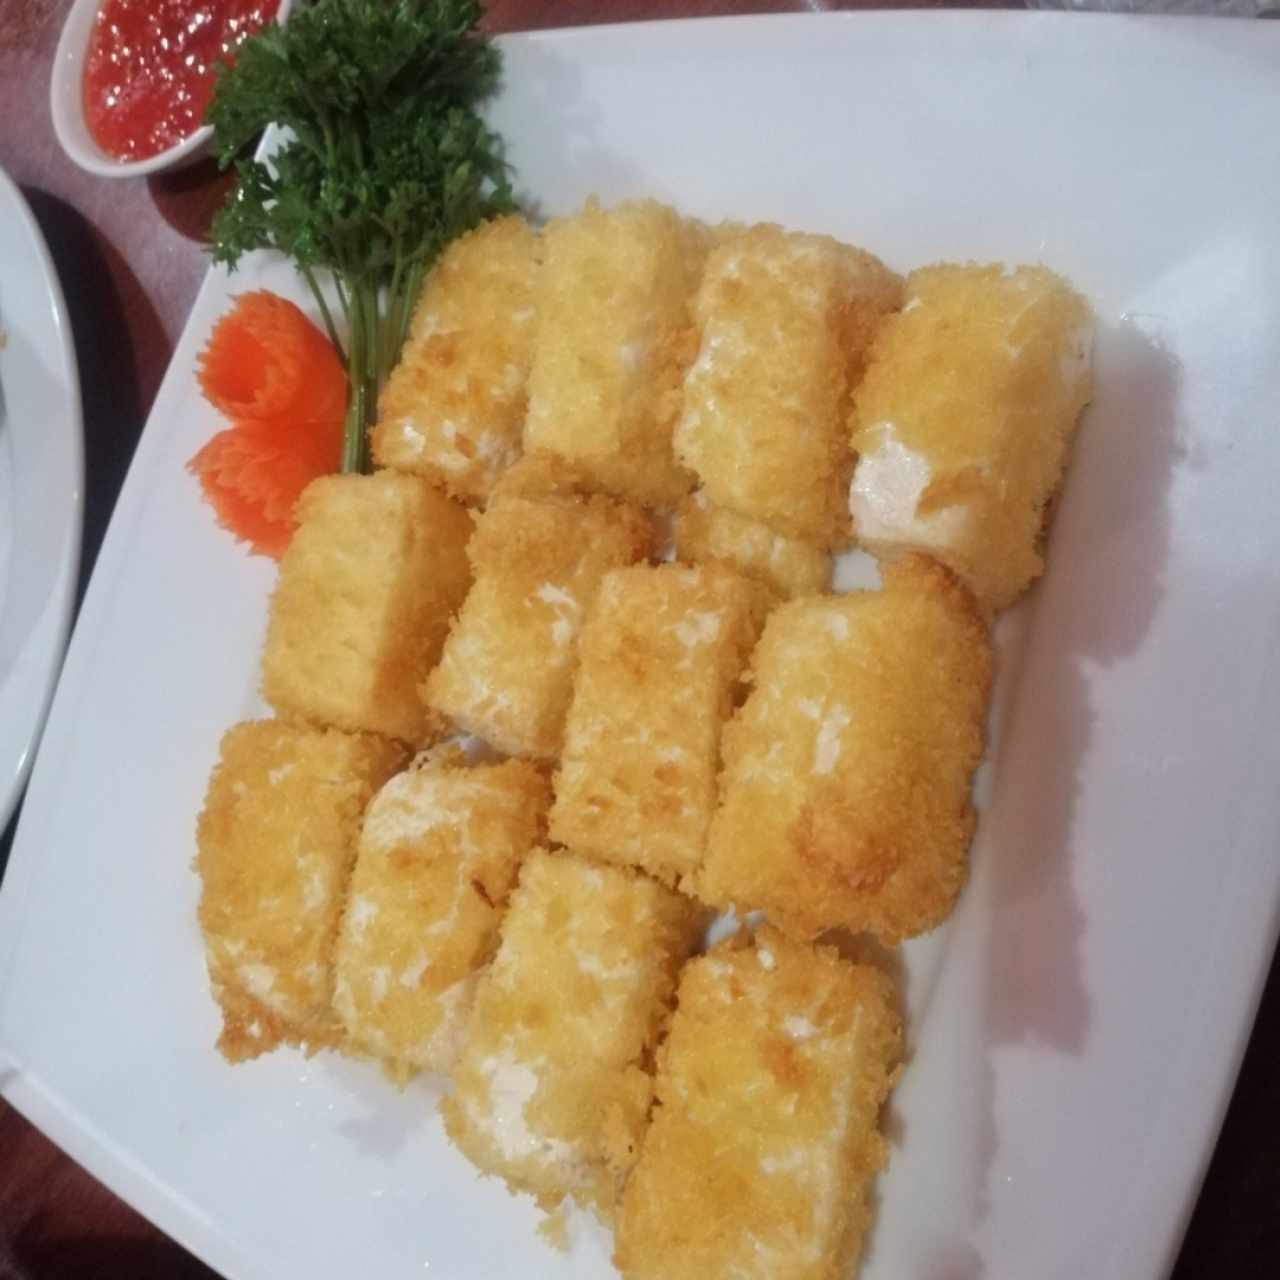 Dau Phu Chien Tofu apanado